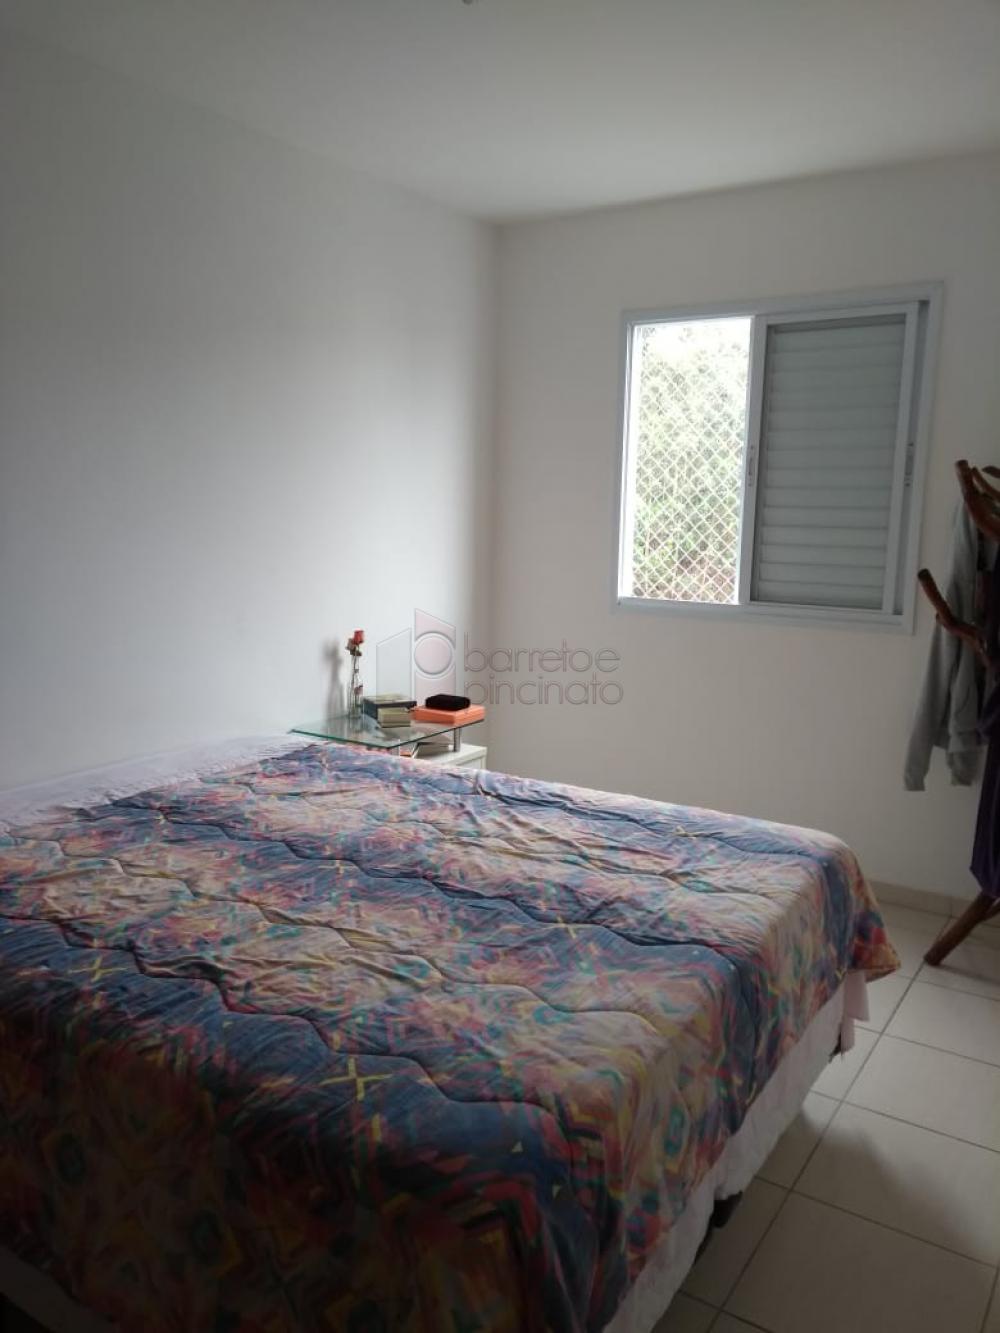 Alugar Apartamento / Padrão em Jundiaí R$ 1.700,00 - Foto 12